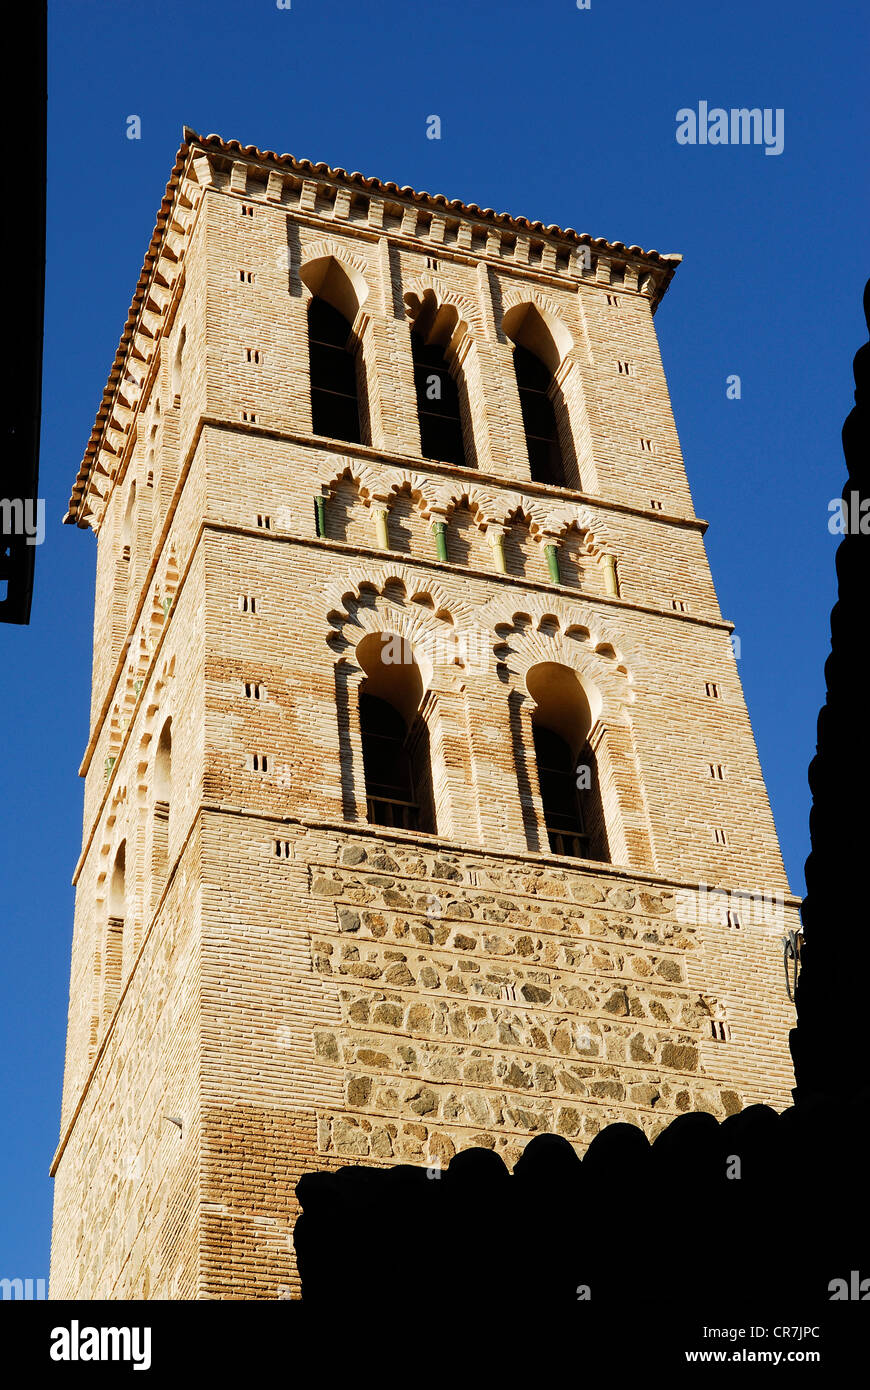 Spagna, Castilla la Mancha, Toledo, storica città patrimonio mondiale dell'UNESCO, il campanile della chiesa di Santo Tome Foto Stock